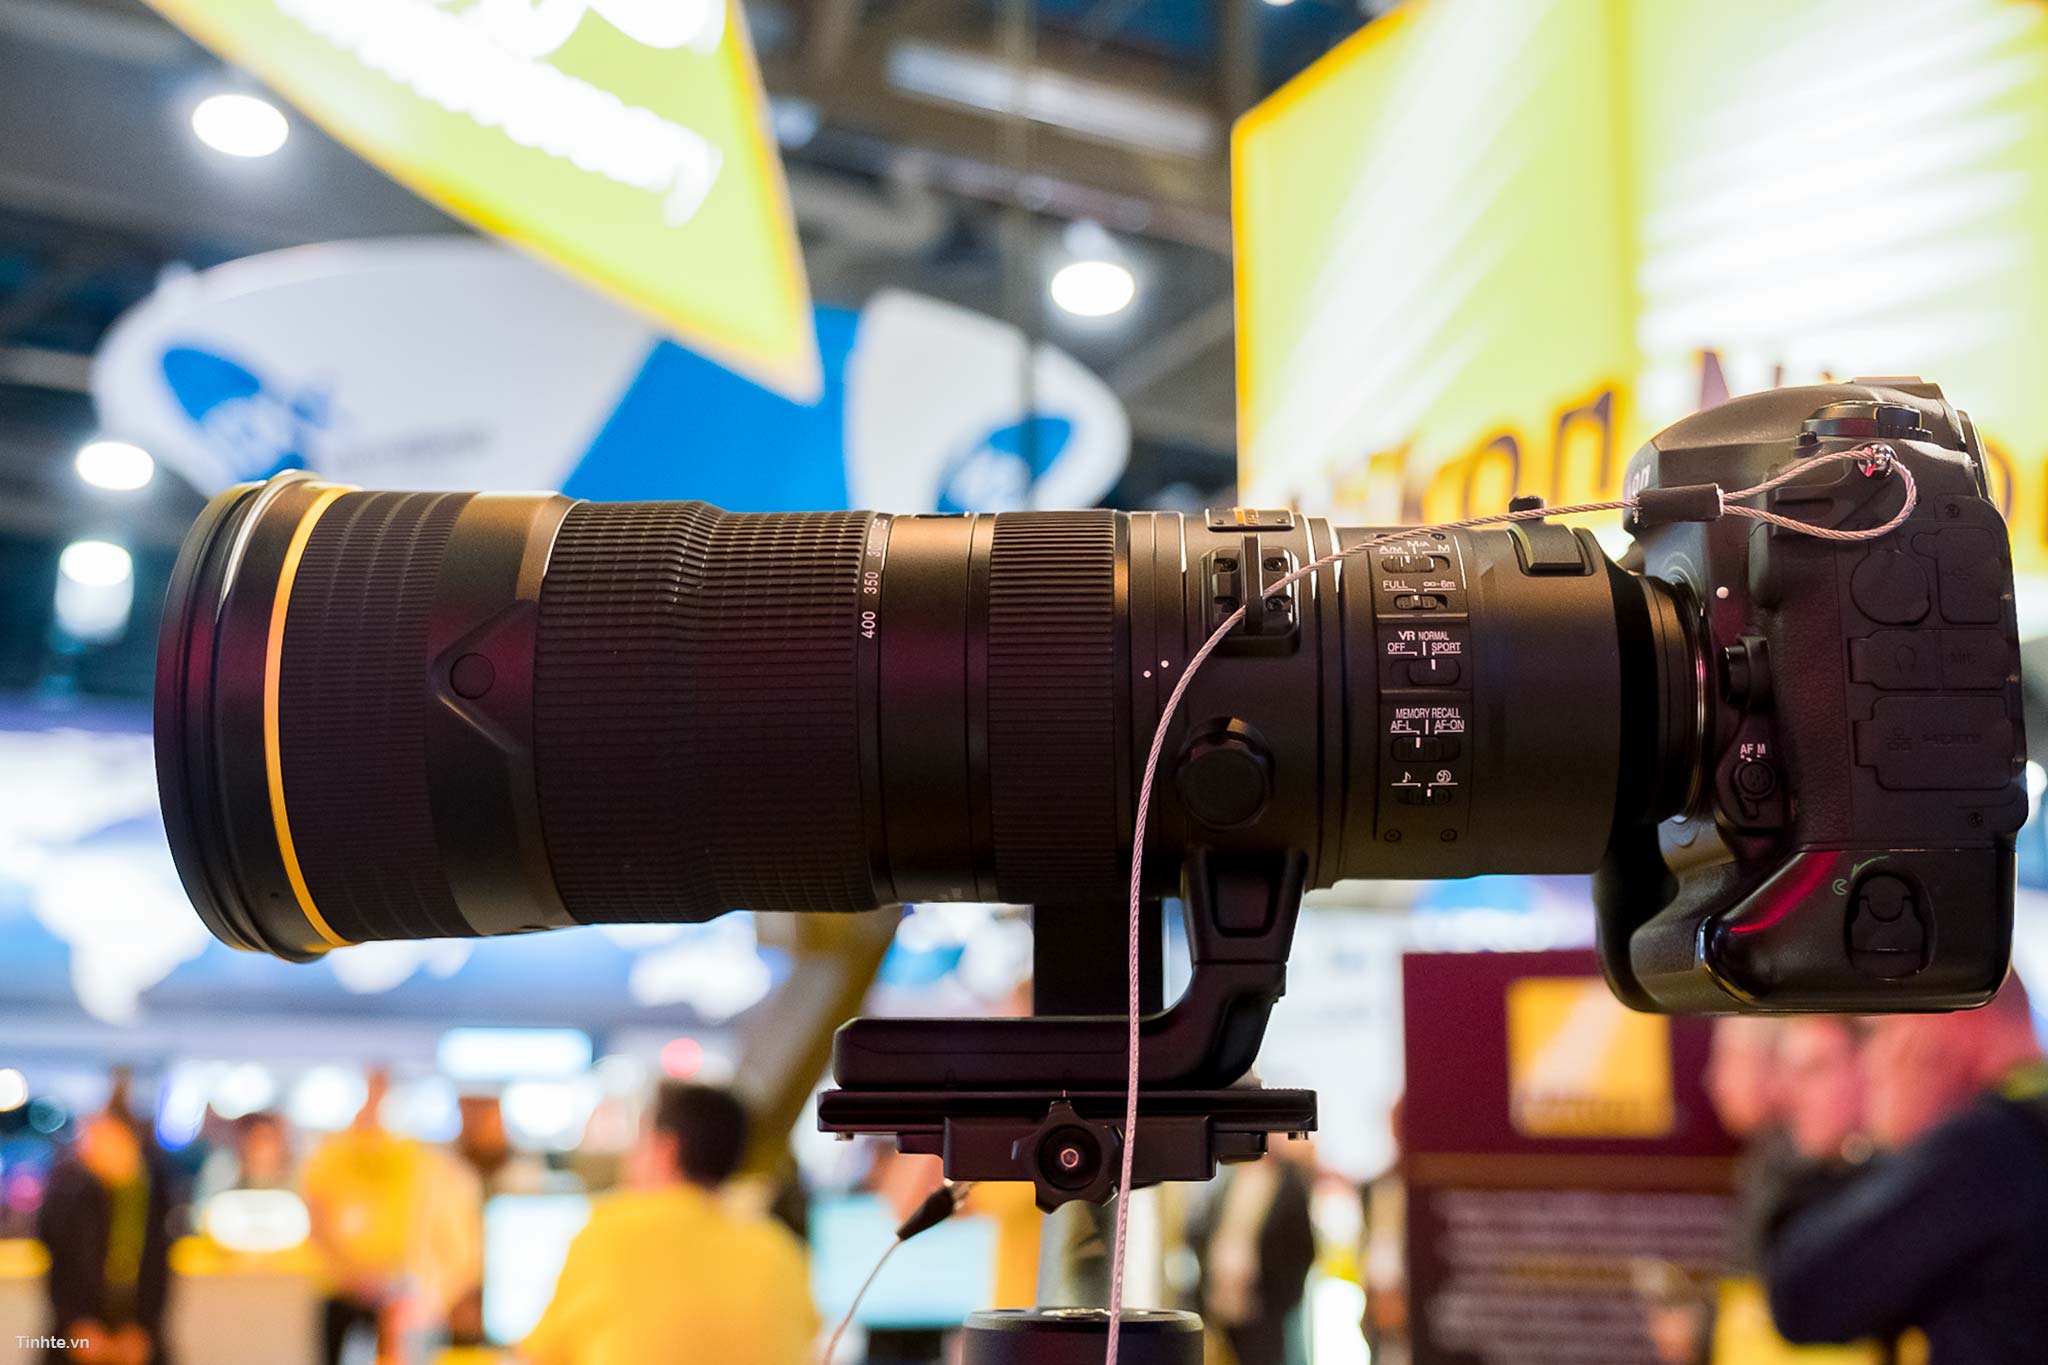 Đang tải Nikkor 180-400mm F4E - Camera.tinhte.vn 3.jpg…